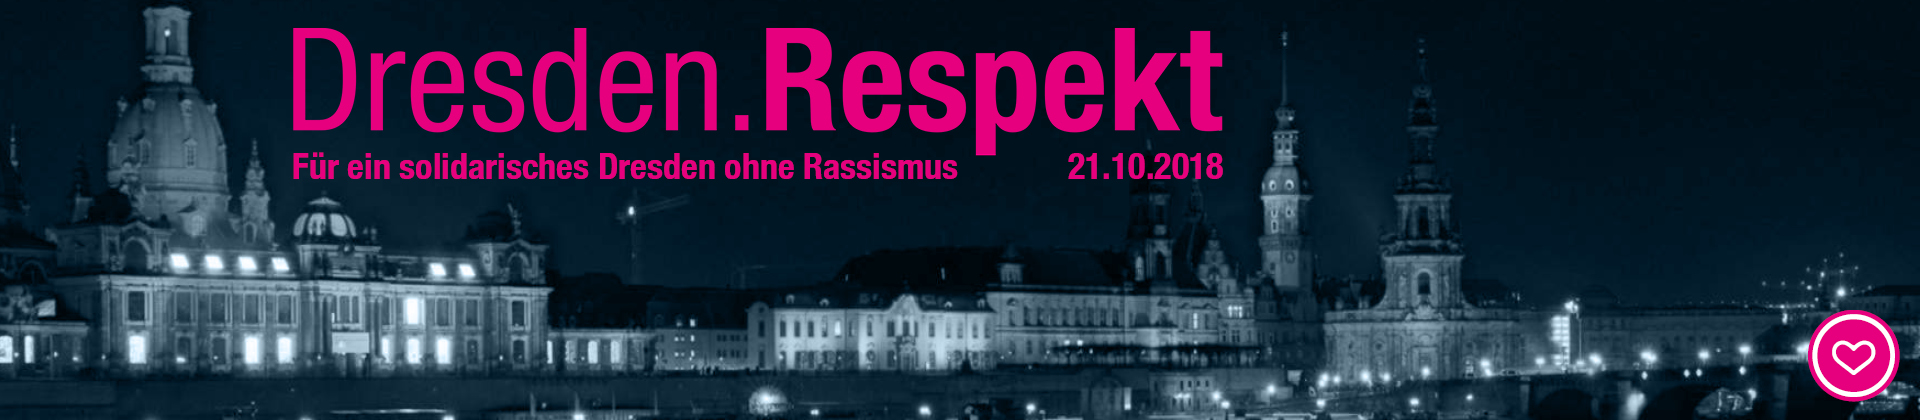 Dresden.Respekt - Gemeinsam für ein solidarisches Dresden ohne Rassismus